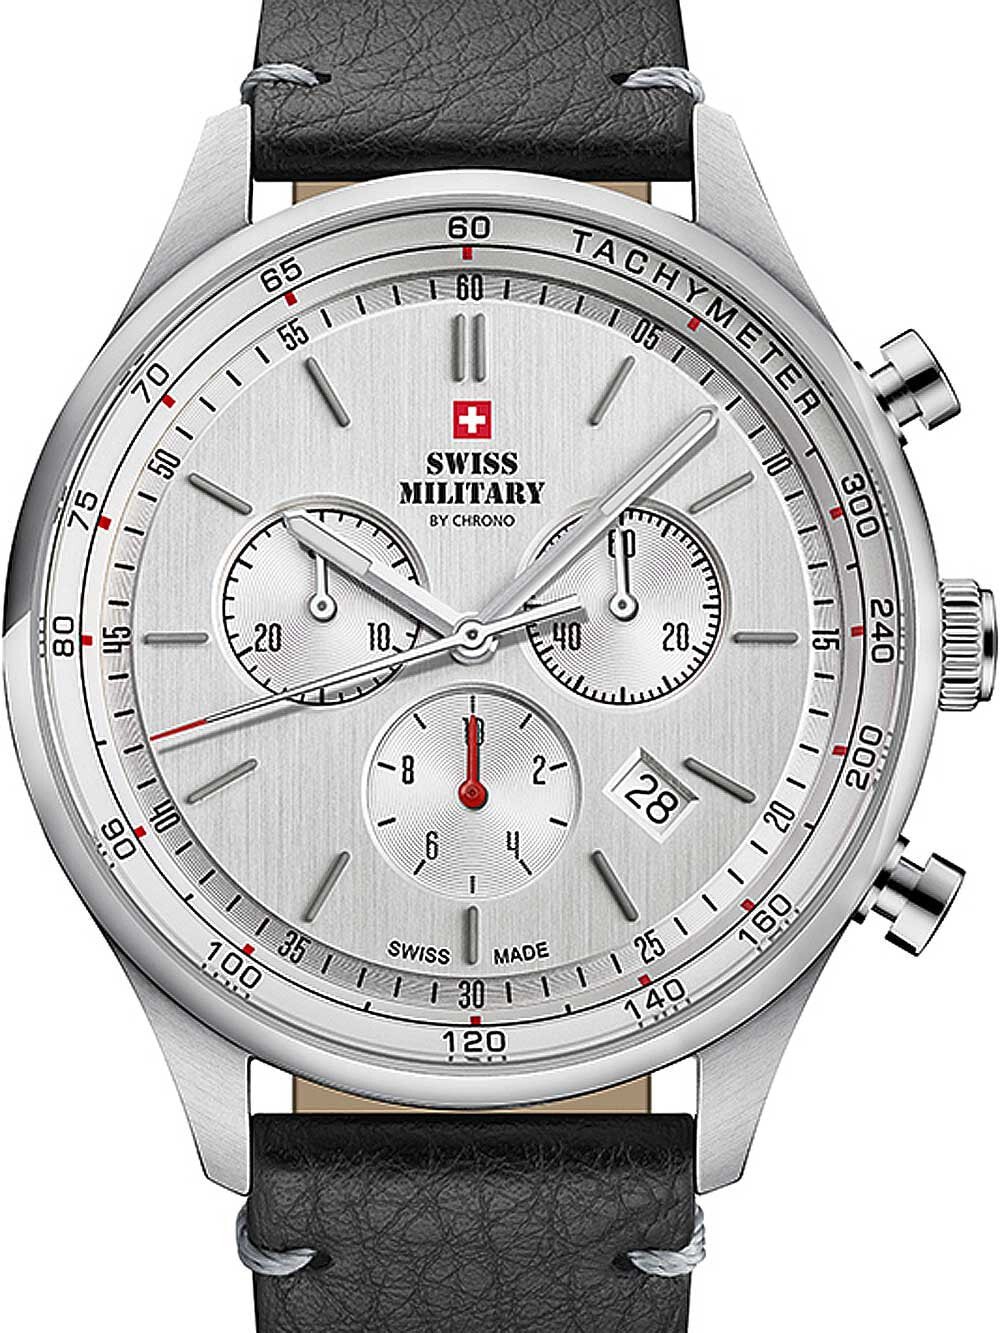 Мужские наручные часы с черным кожаным ремешком  Swiss Military SM34081.07 chrono 42mm 10ATM